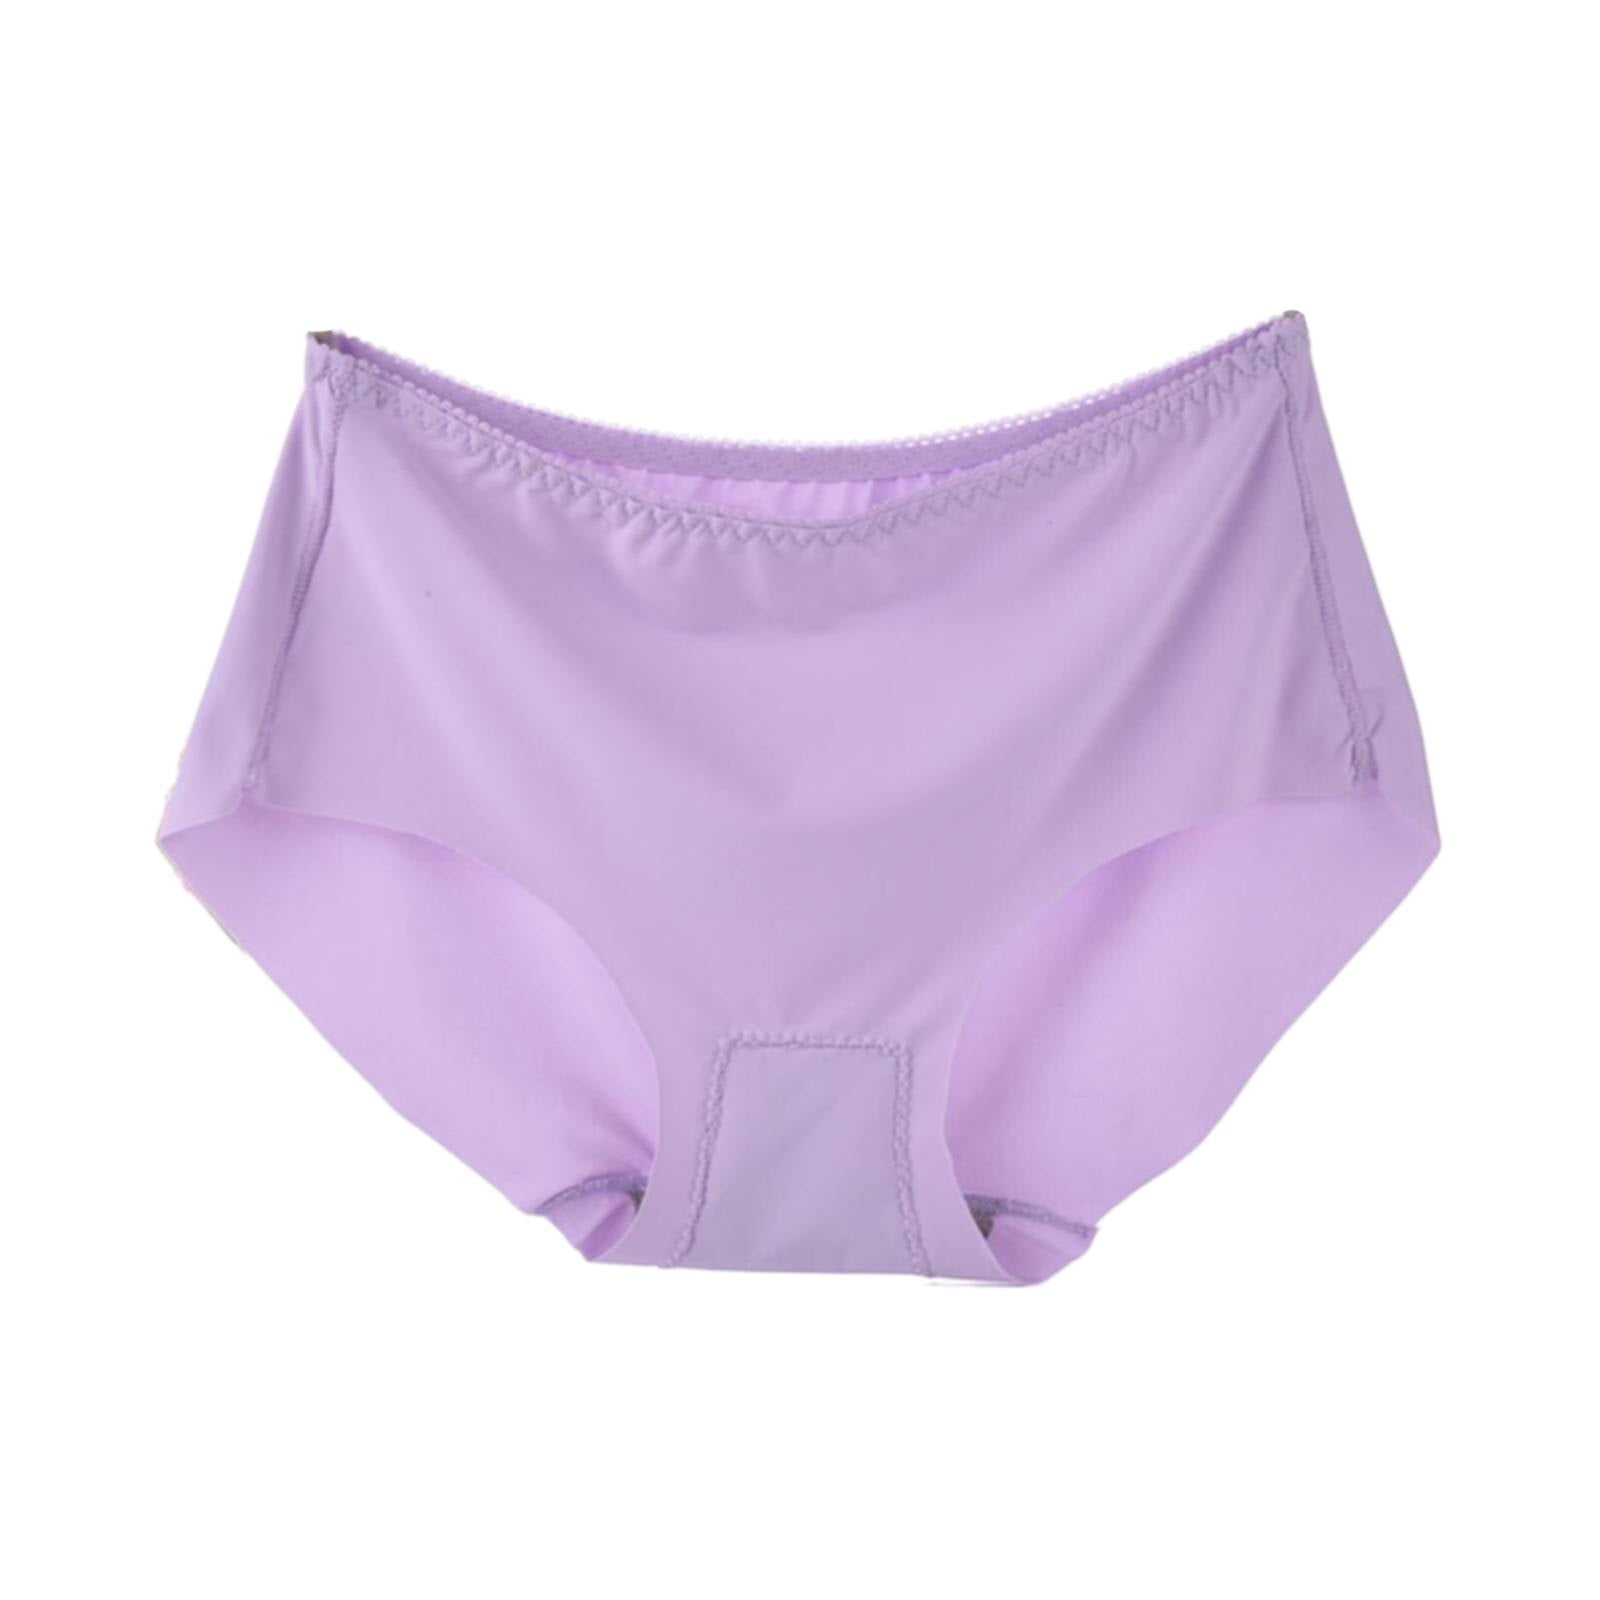 PEASKJP Shapewear Underwear for Women Tummy Control Seamless